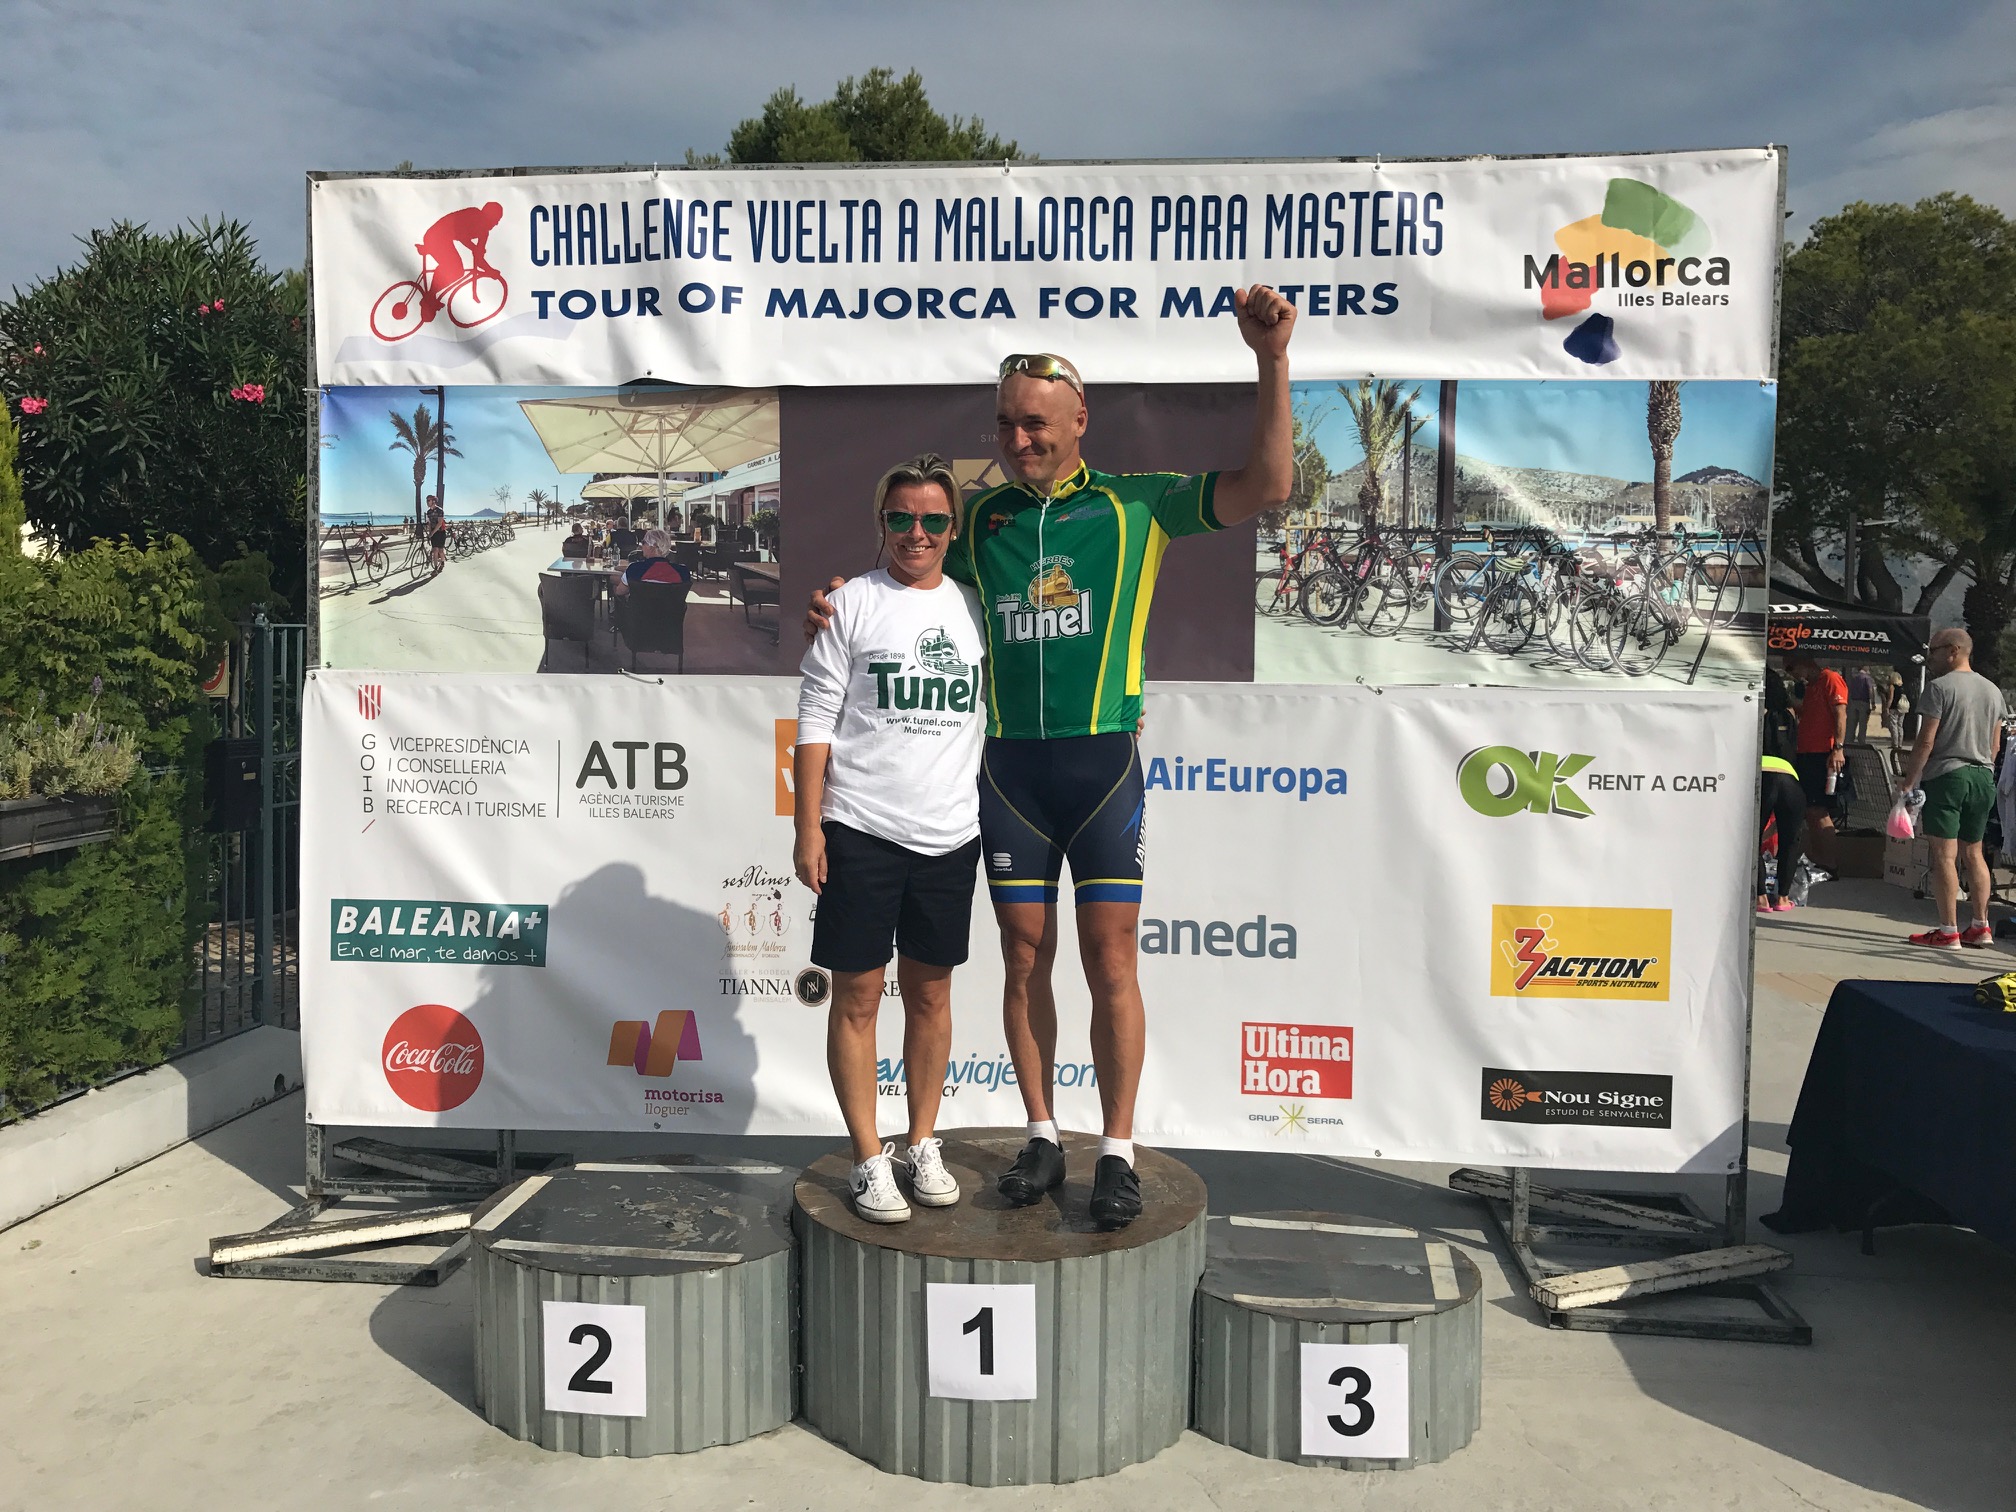 ChallengeVueltaMallorca2017_2a_etapa_maillots_tunel